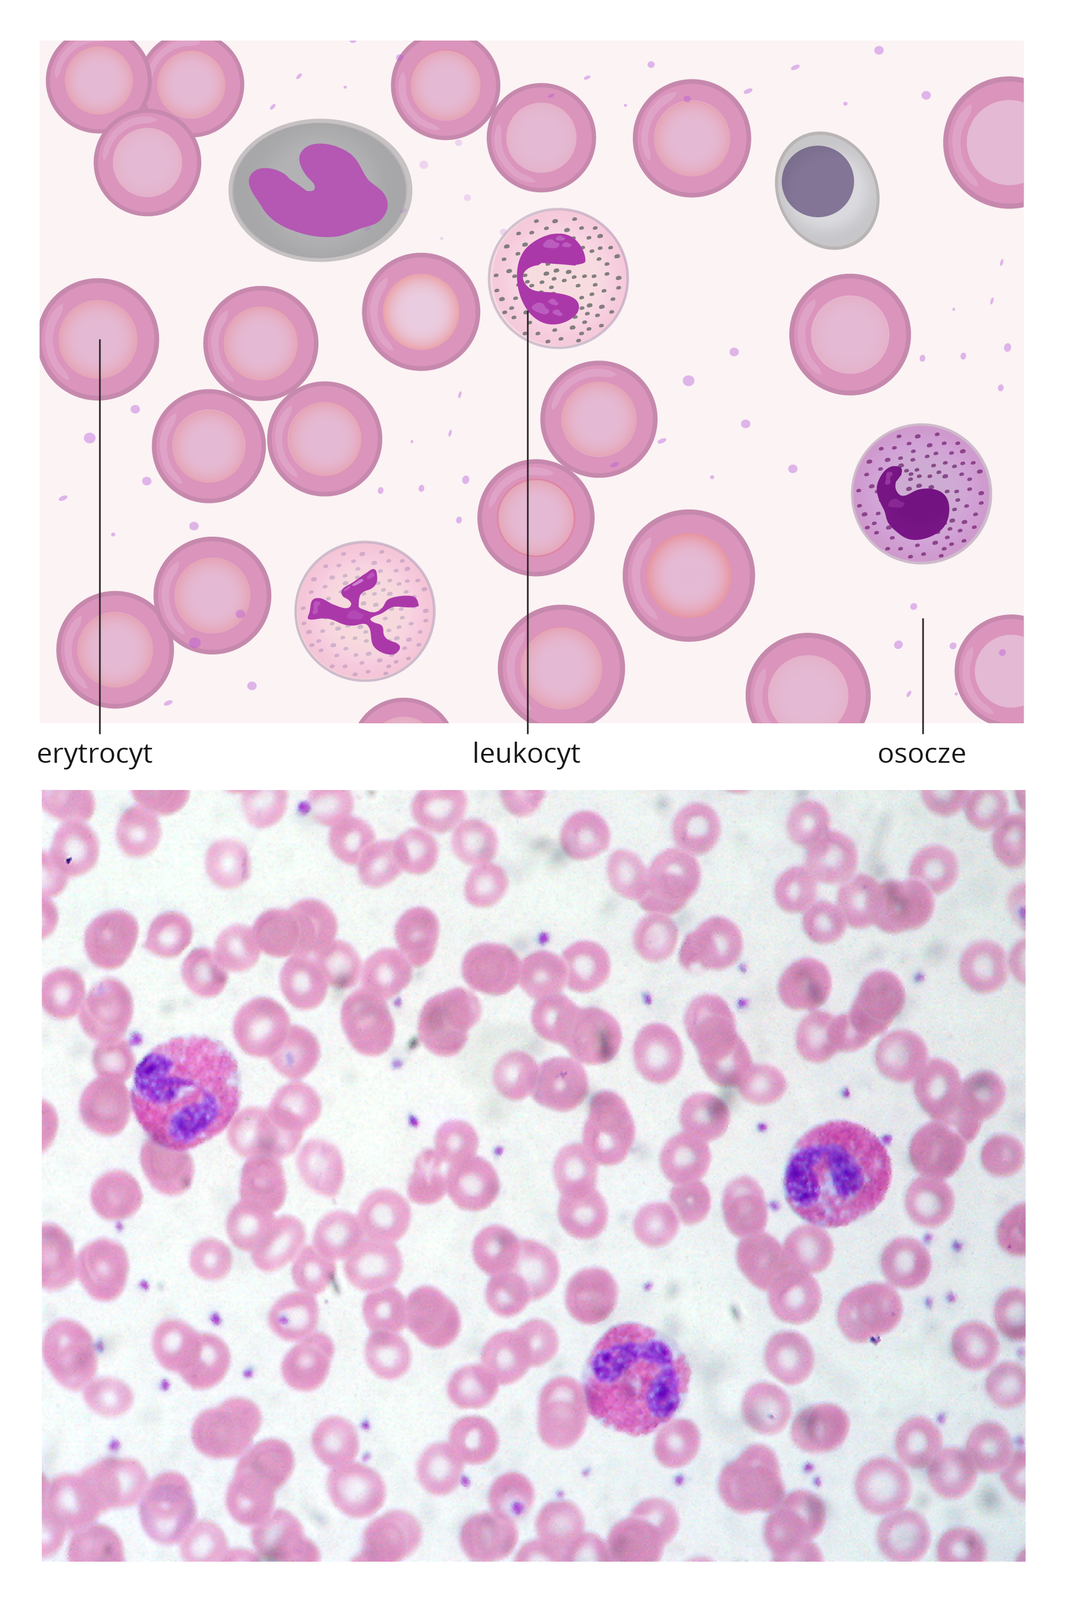 Dwie ilustracje. U góry schematyczny rysunek składników krwi. W jasnym prostokącie kilkanaście okrągłych, różowych komórek z jaśniejszym środkiem, symbolizujących erytrocyty. Okrągłe komórki nakrapiane w środku z rozgałęzionym, fioletowym jądrem to leukocyty. Jasne, kropkowane tło oznaczono jako osocze.Poniżej znajduje się obraz mikroskopowy krwi z licznymi małymi erytrocytami i trzema większymi, ciemniejszymi leukocytami.